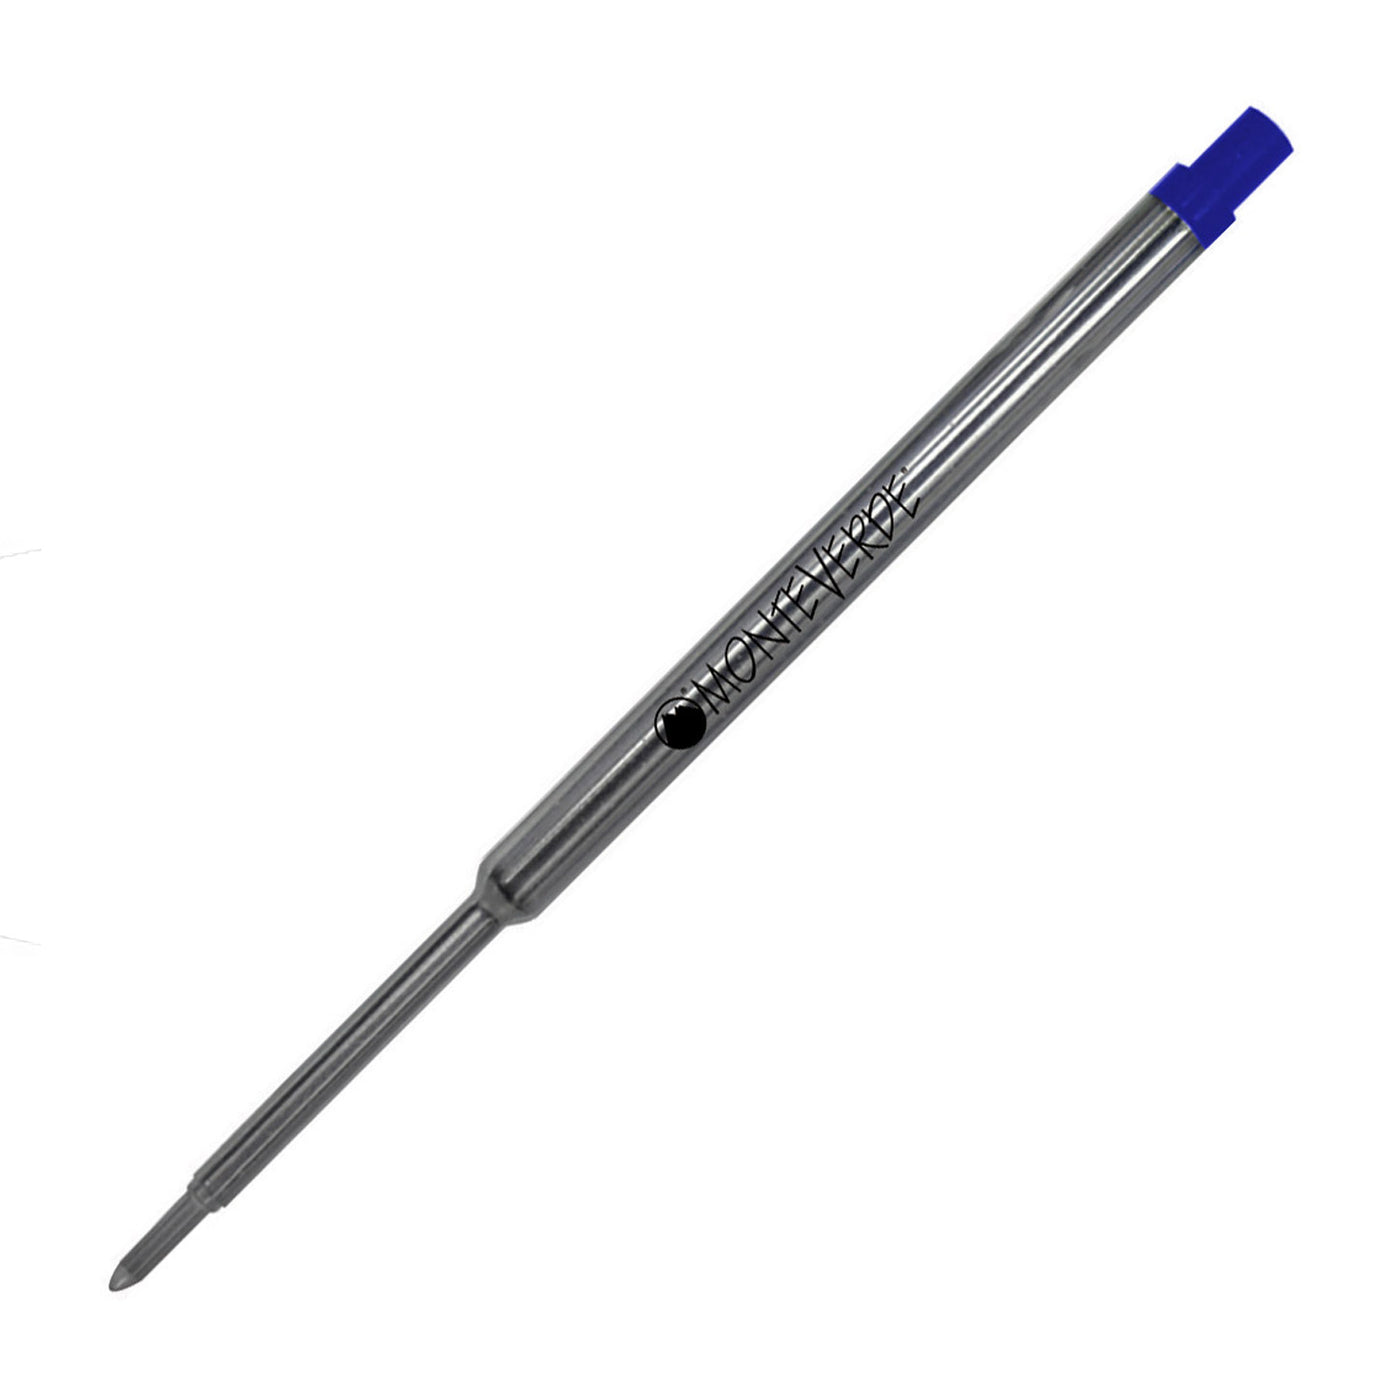 Monteverde Ceramic Gel Ball Pen Refill for Waterman - Fine - Blue - Pack of 2 2